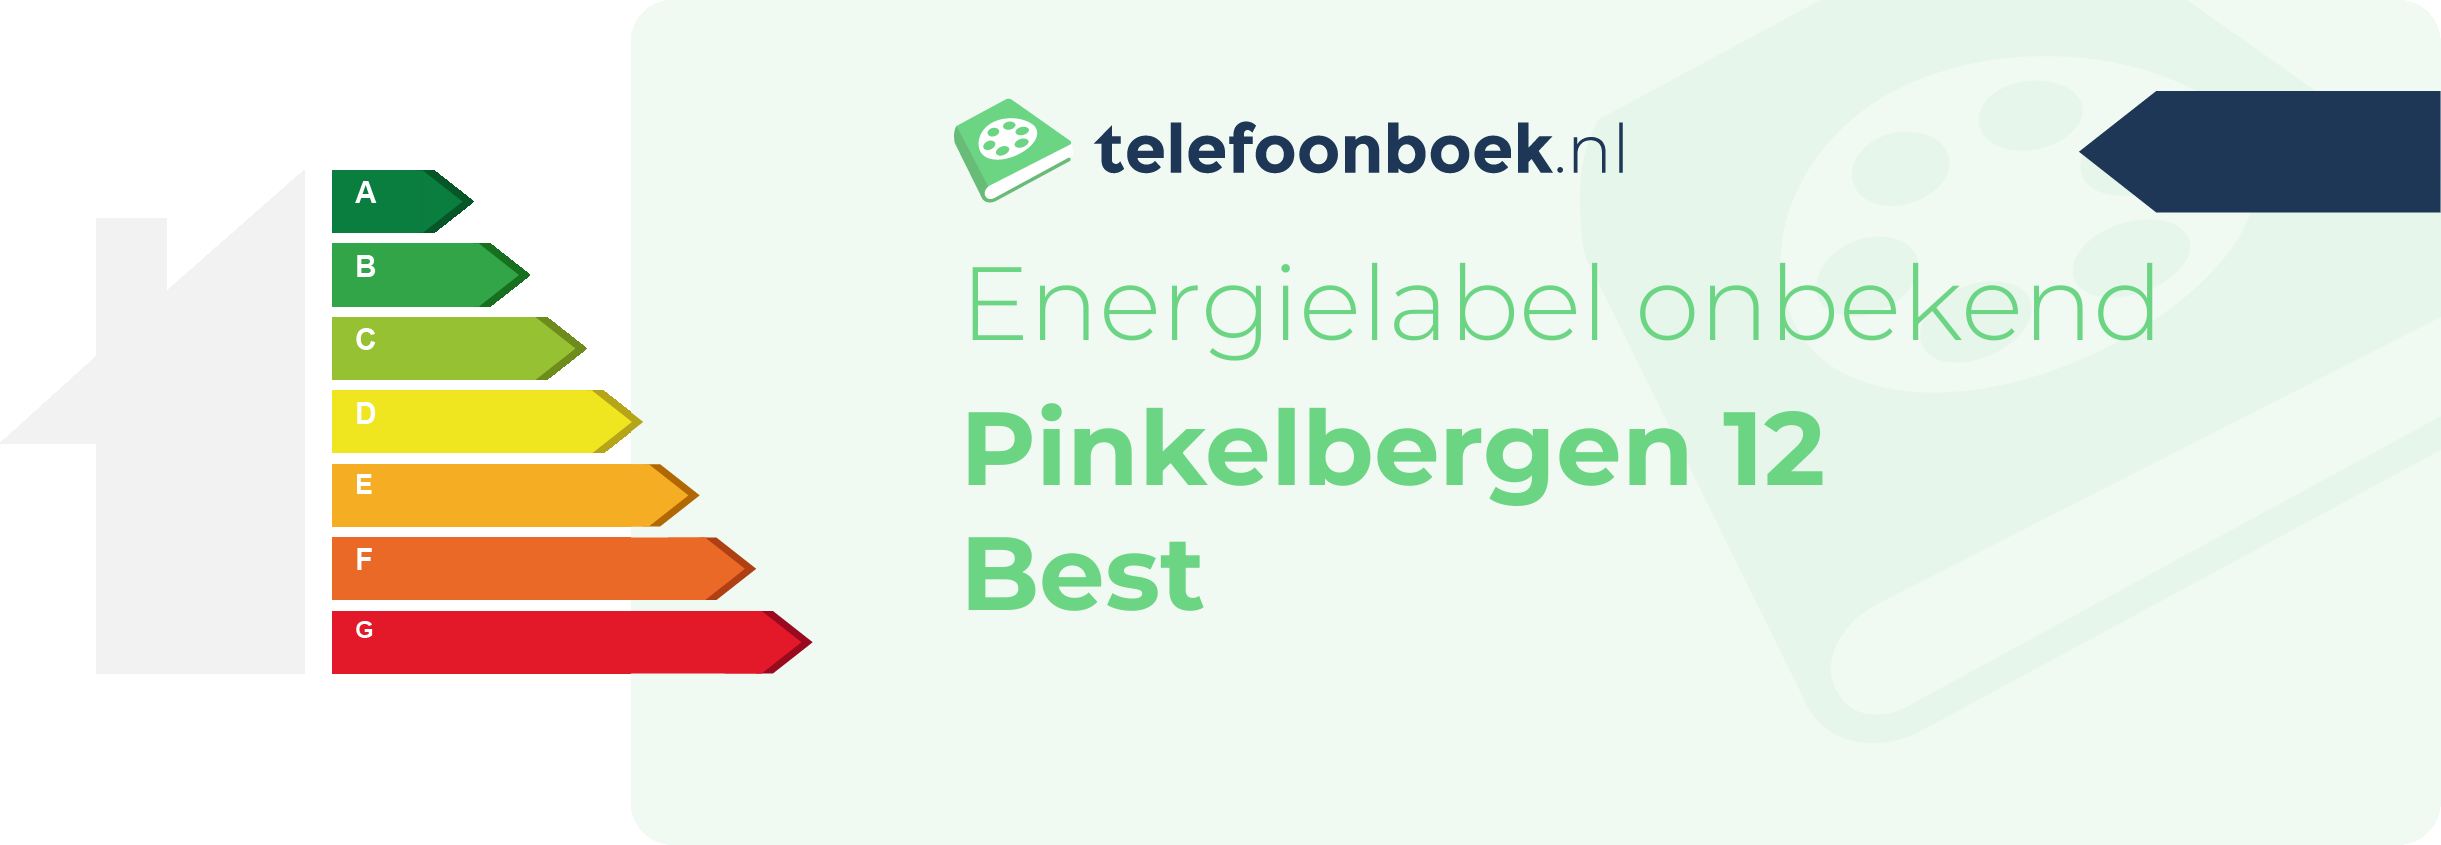 Energielabel Pinkelbergen 12 Best